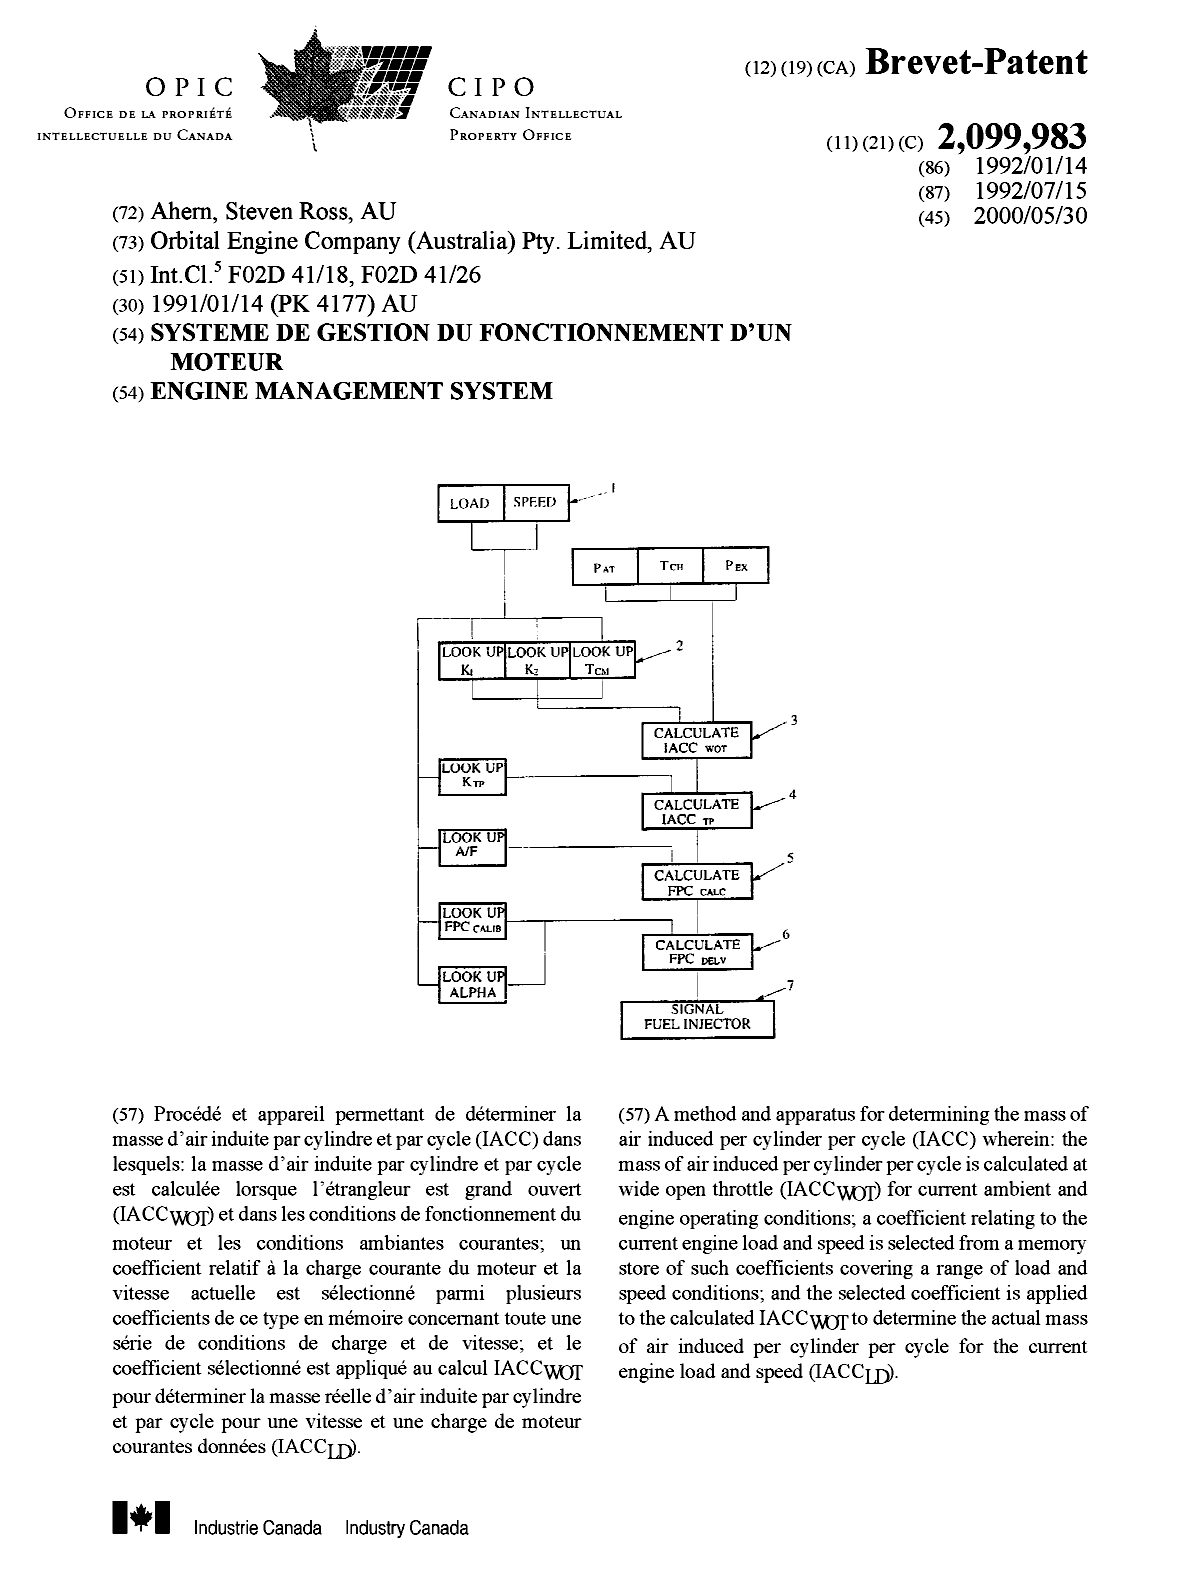 Document de brevet canadien 2099983. Page couverture 20000503. Image 1 de 1